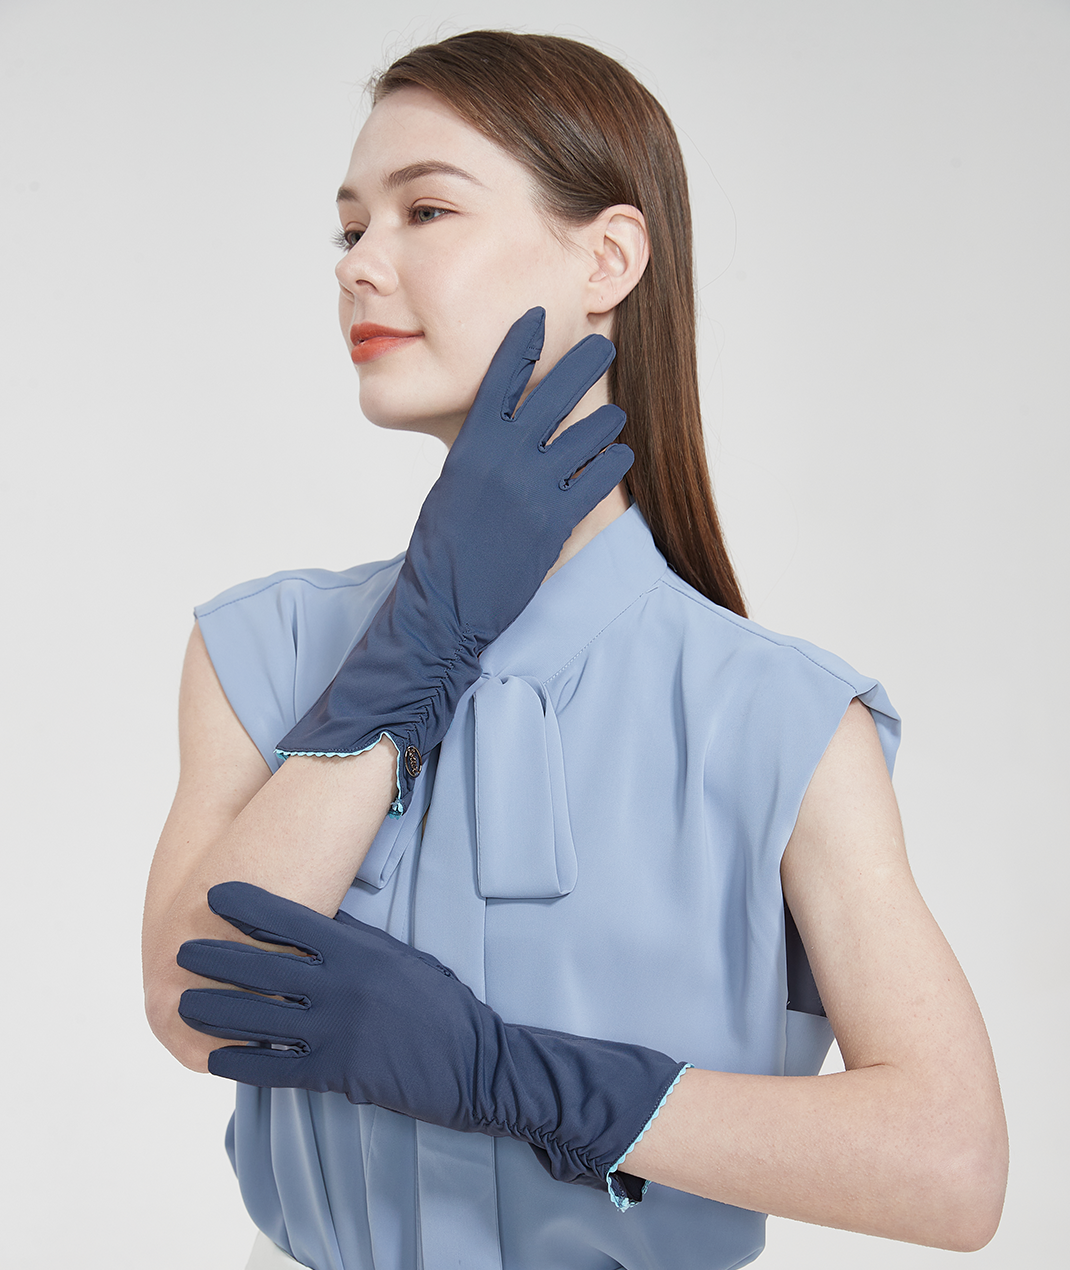 UV Cut / Cool Touch - Flip Finger Touch Screen Gloves Men UPF50+ Apex- –  UV100 Australia